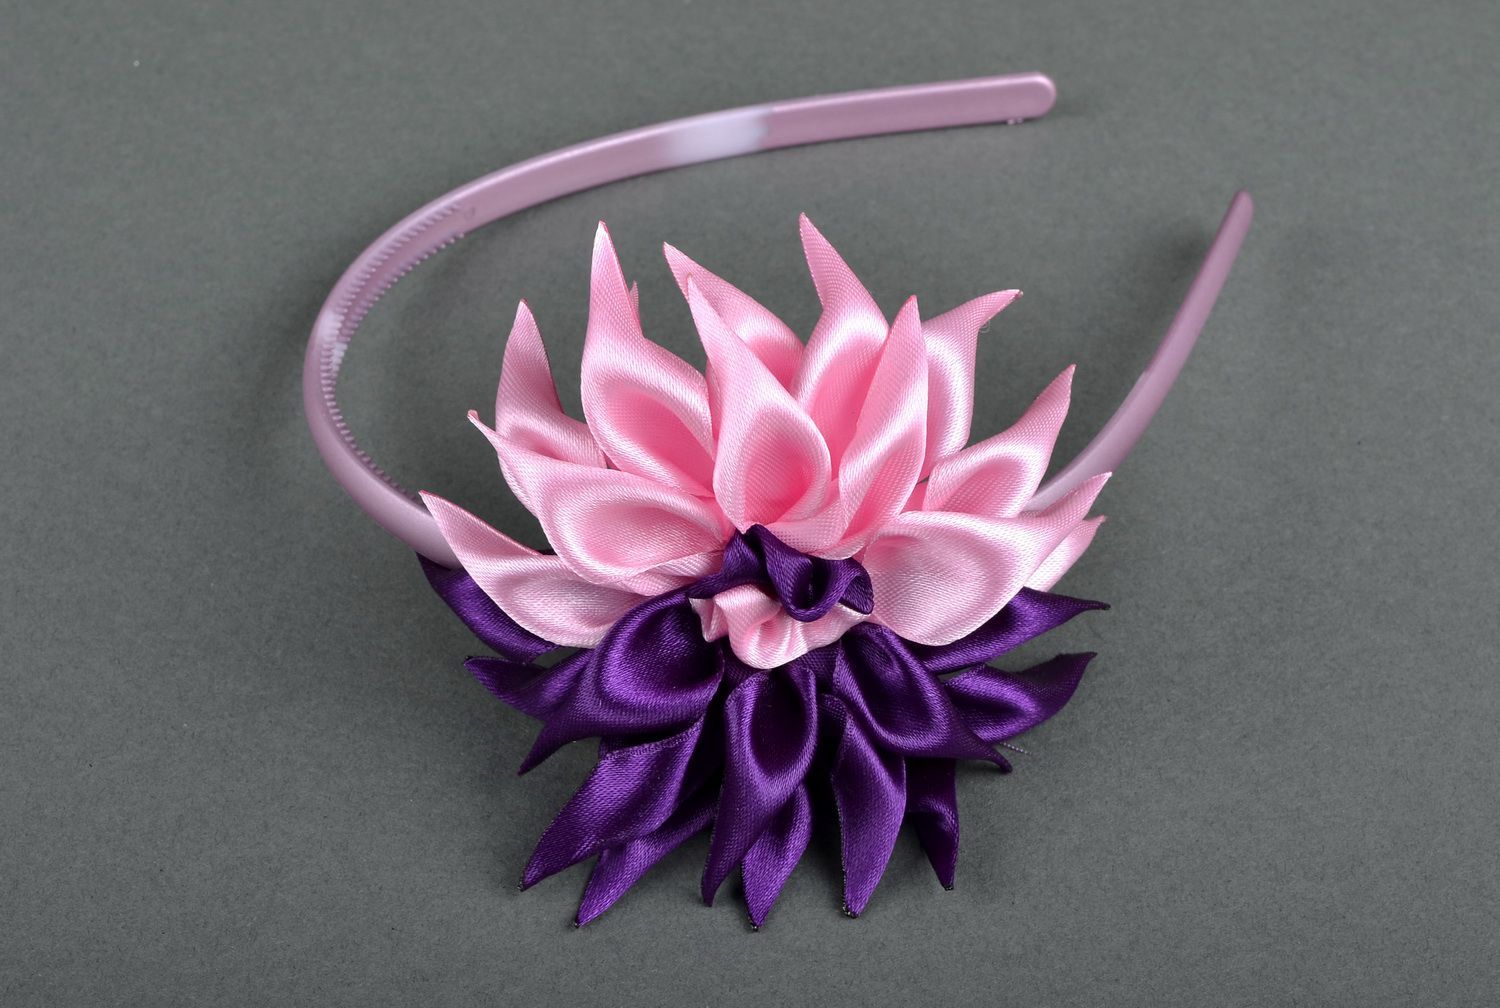 Aro de cabelo, coroa de flores na cabeça com uma flor de seda foto 2